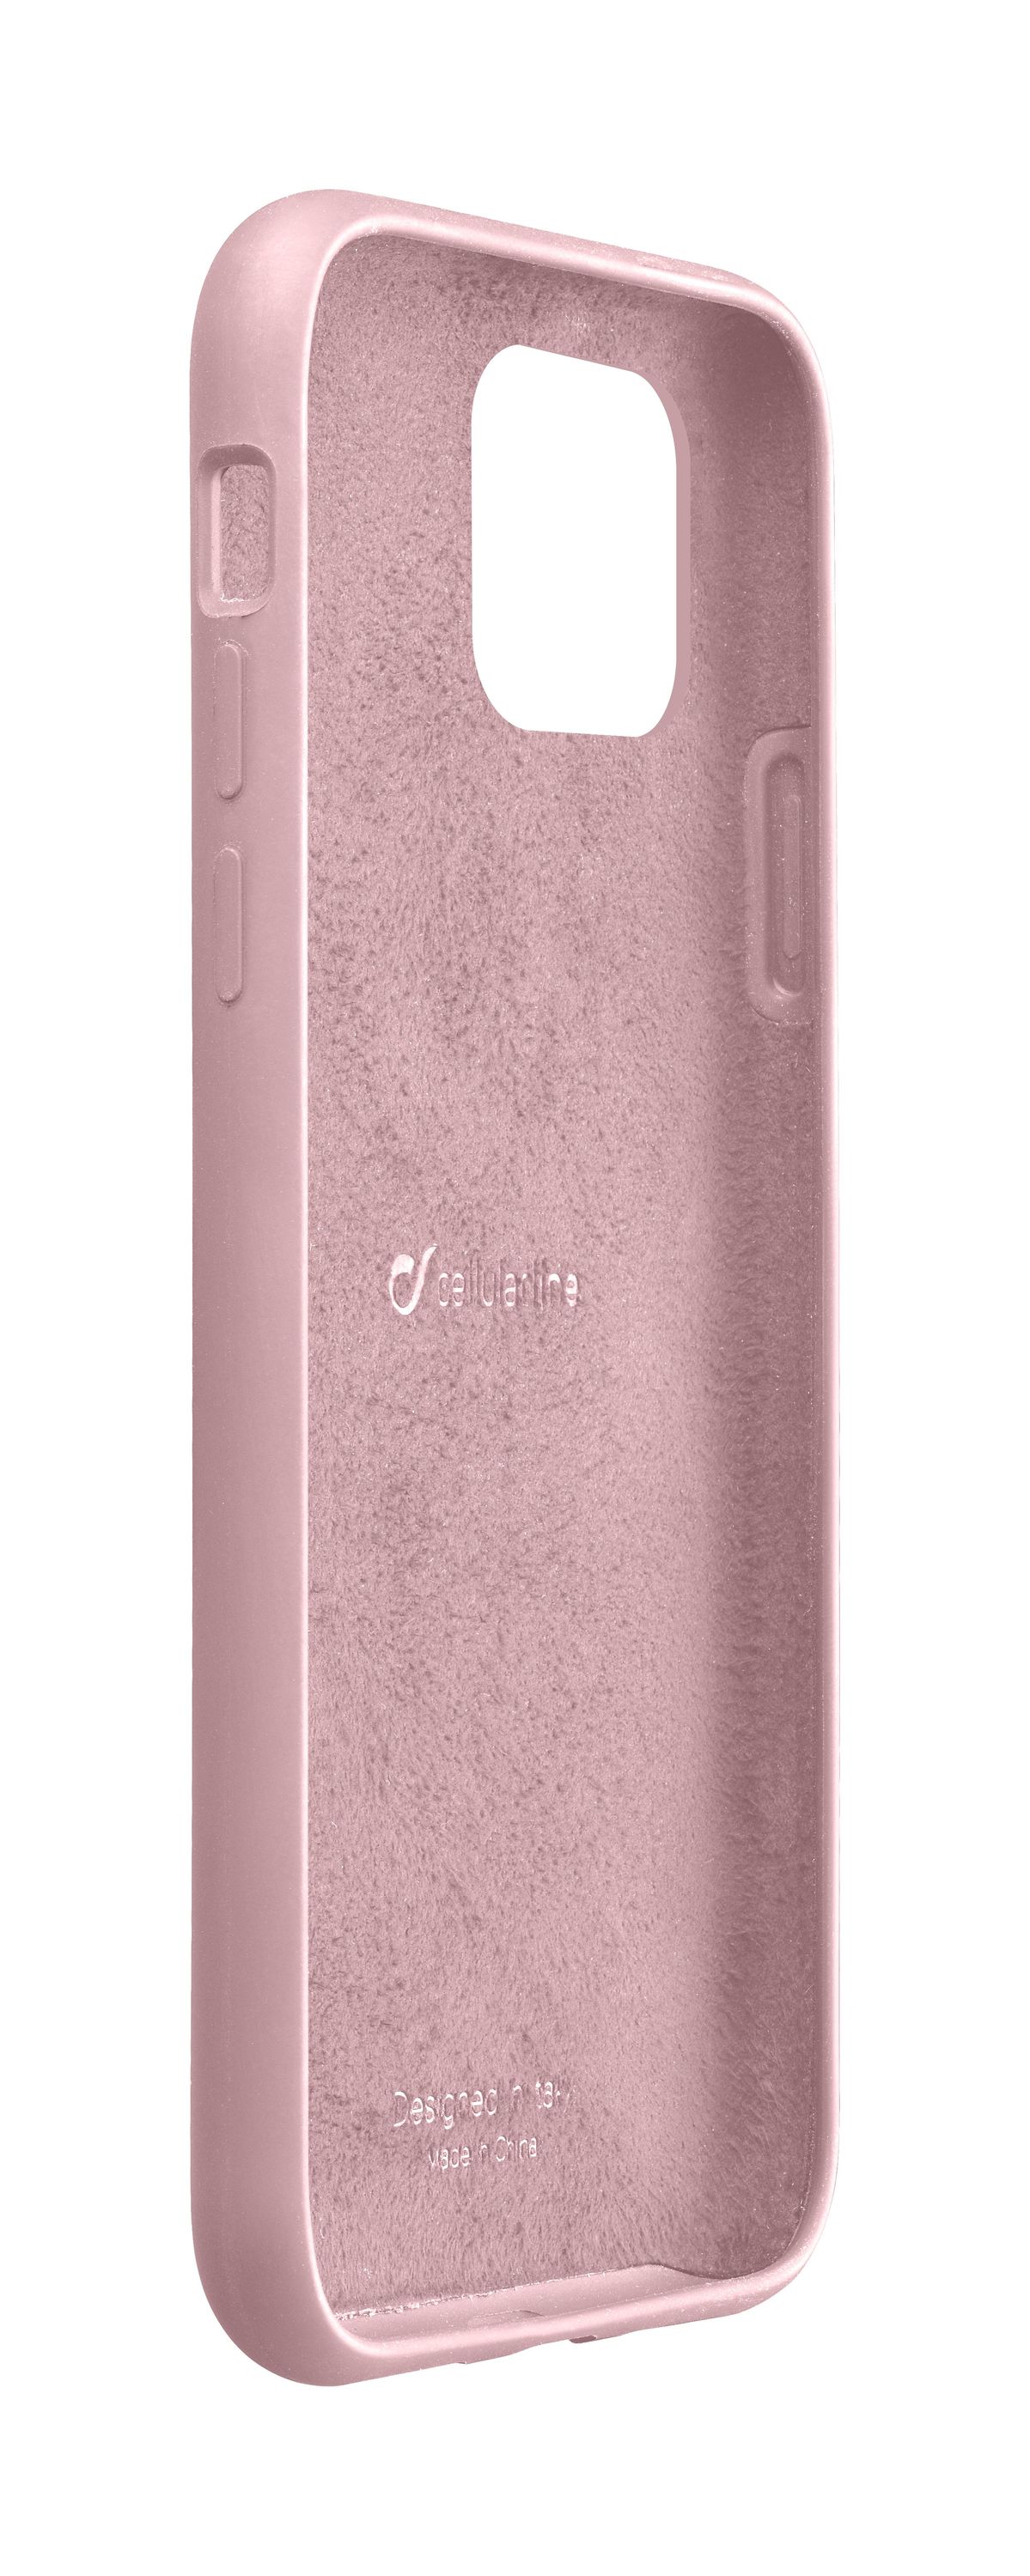 iPhone 11 Pro, hoesje sensation, roze